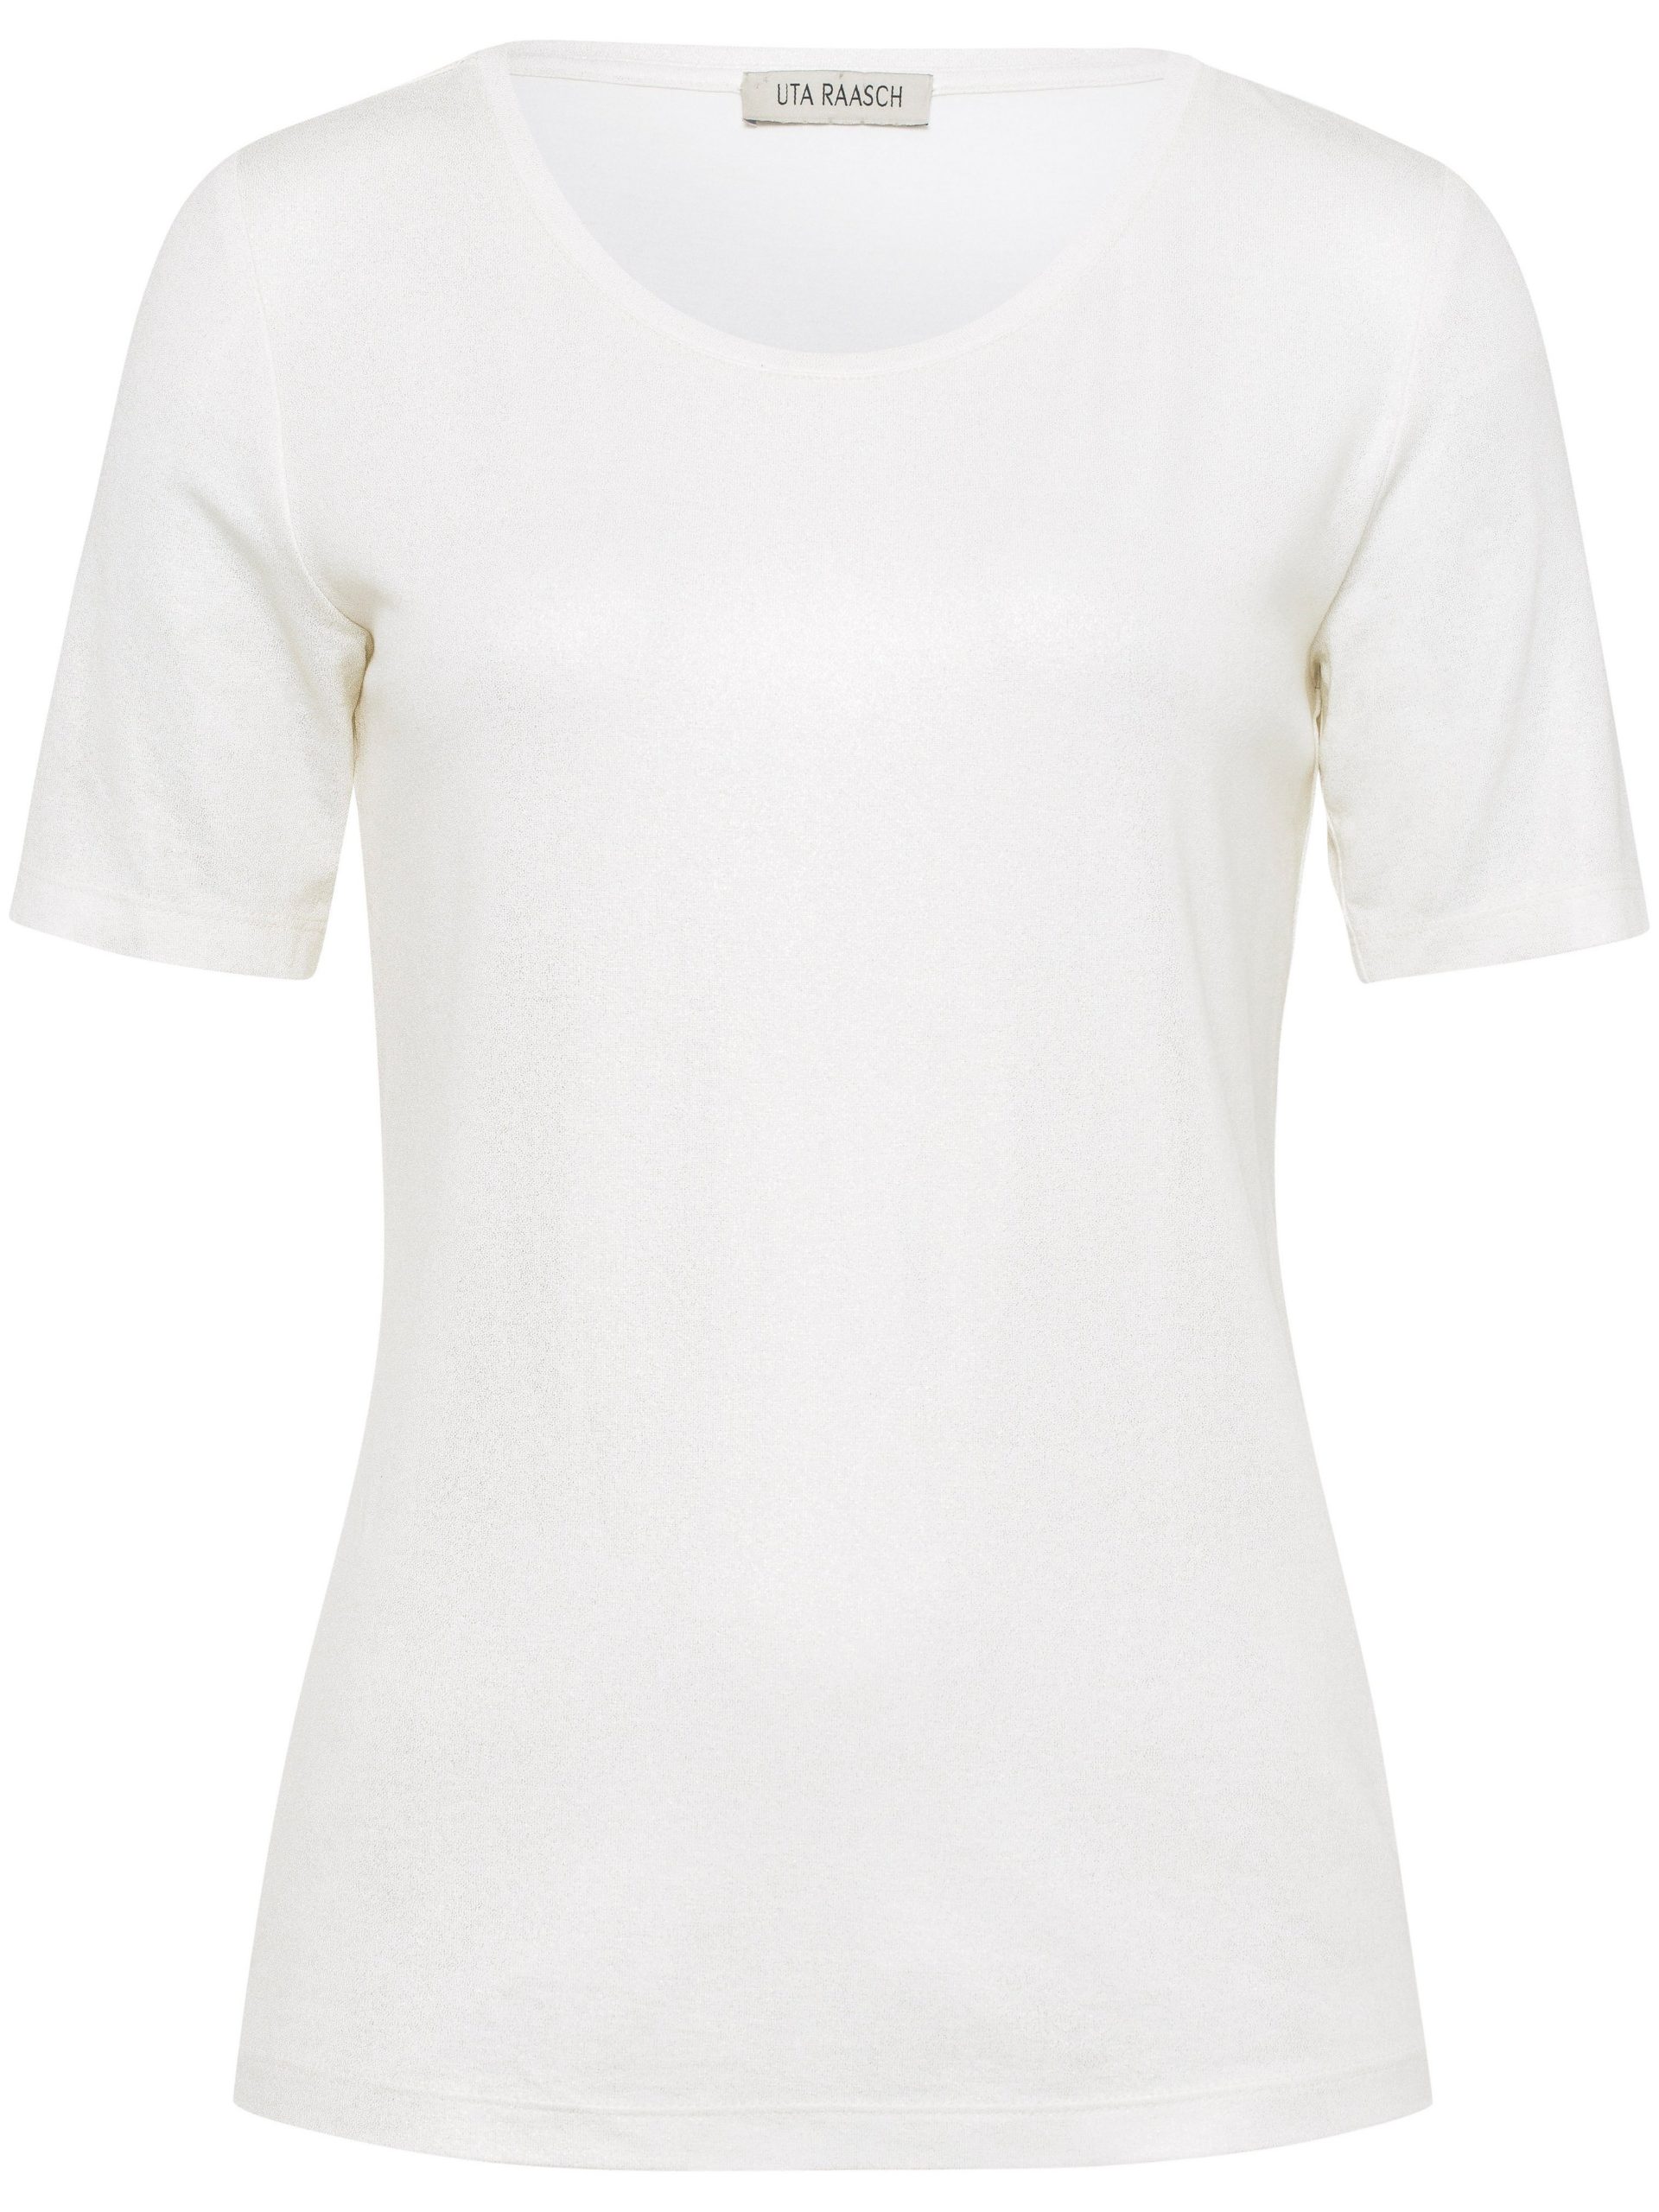 Shirt met ronde hals Van Uta Raasch wit Kopen